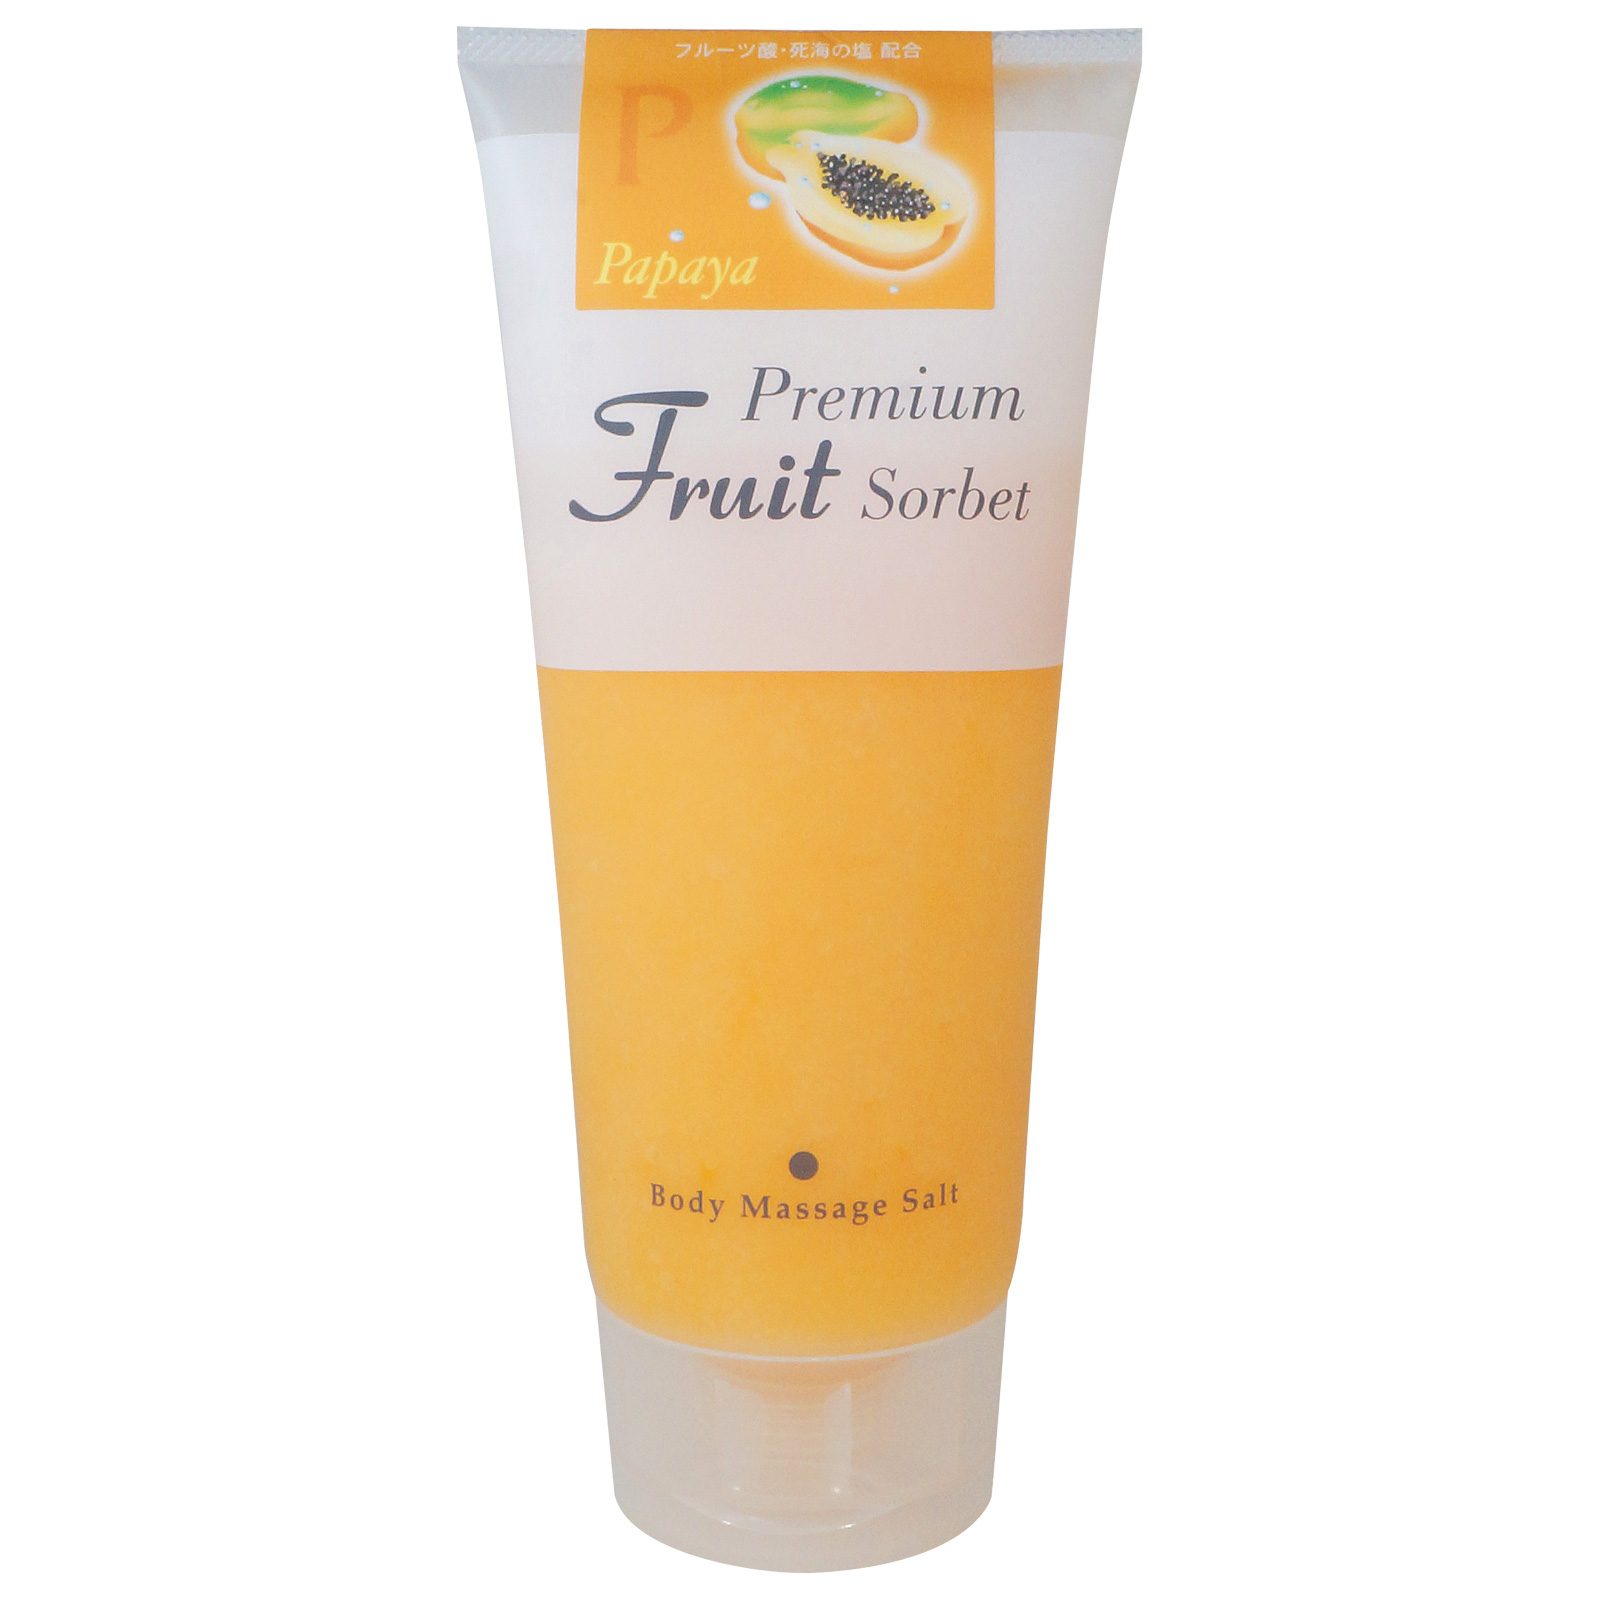 Cosmepro Premium Fruit Sorbet Body Massage Salt Papaya. Премиальный фруктовый скраб-сорбет для тела на основе соли «Папайя» Космепро, 500 г